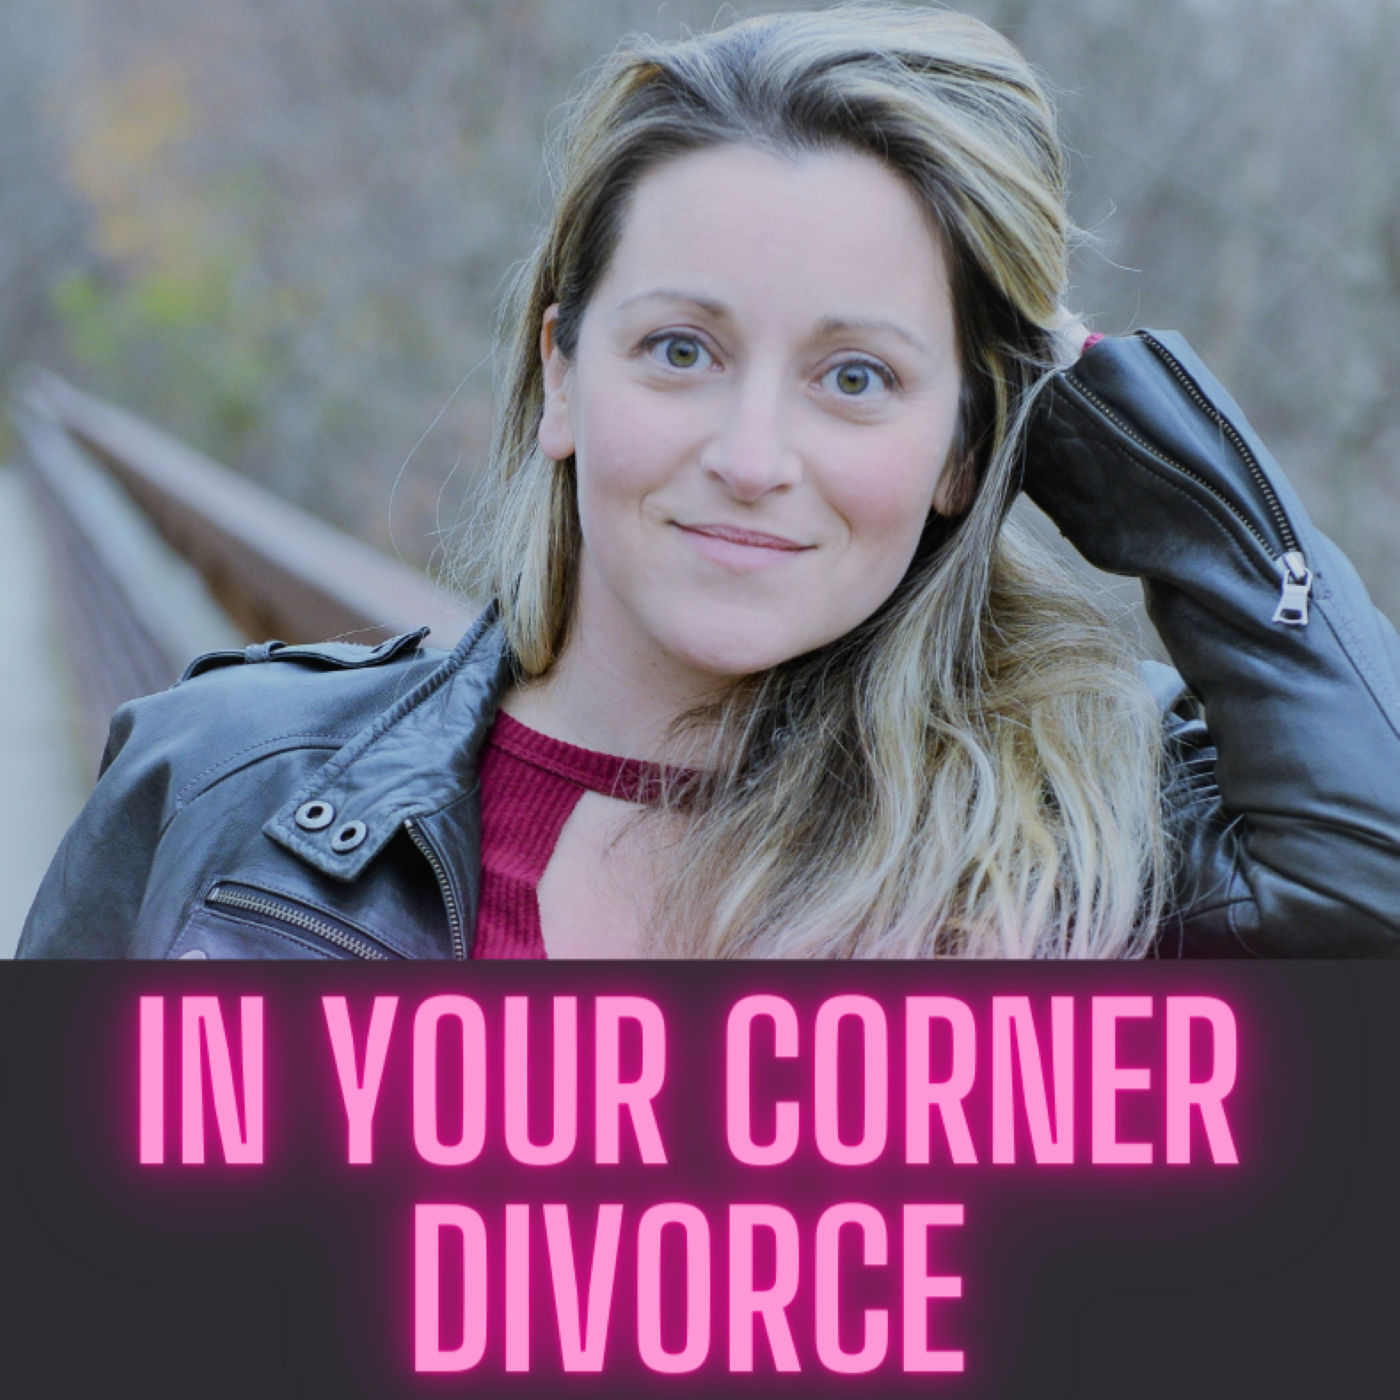 IN YOUR CORNER DIVORCE